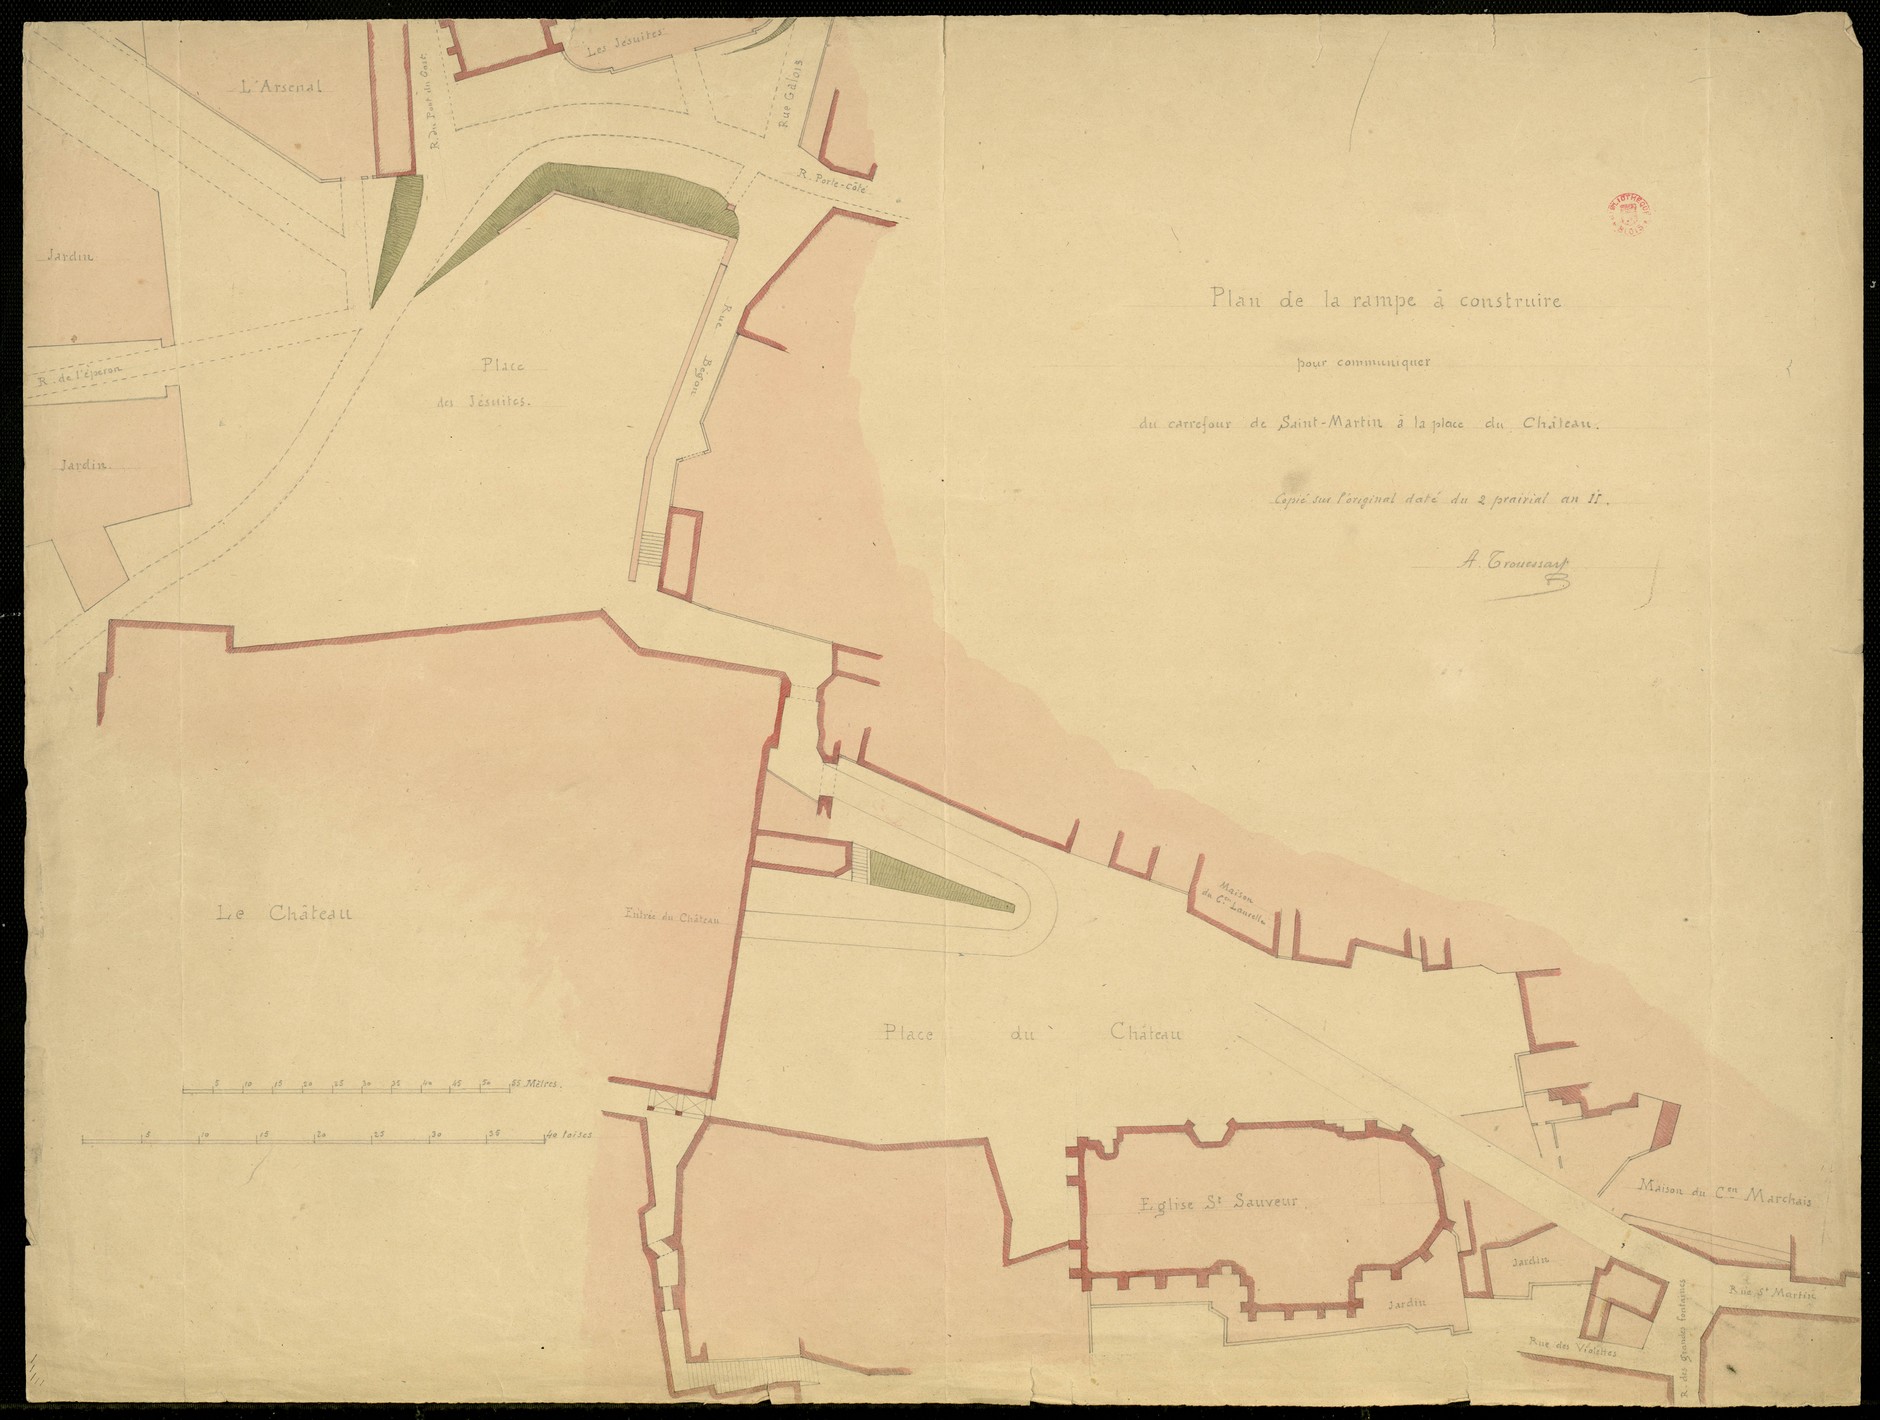 Blois, Plan de la rampe à construire pour communiquer du carrefour Saint-Martin à la place du château, 1803, copie par Arthur Trouessart